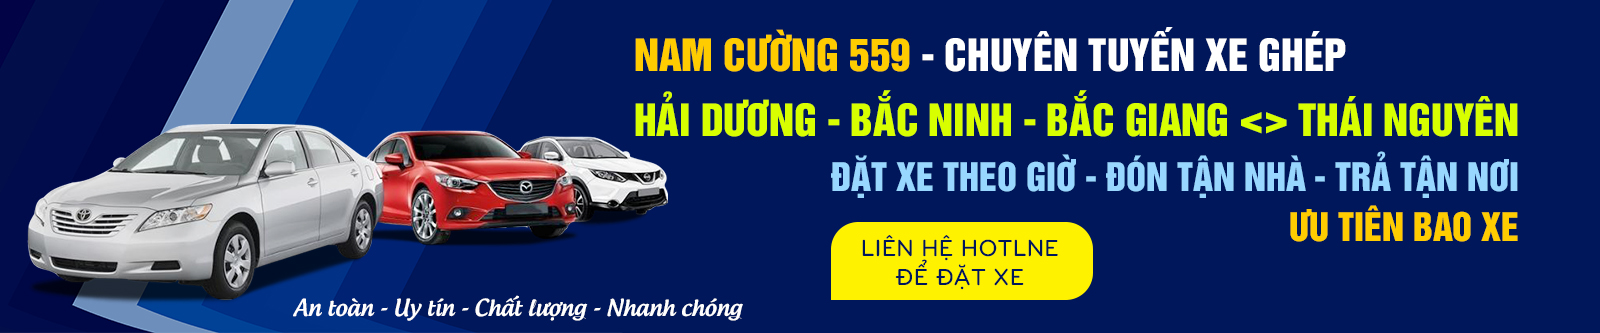 Nhà xe Nam Cường 559 tuyến Hải Dương - Hà Nội